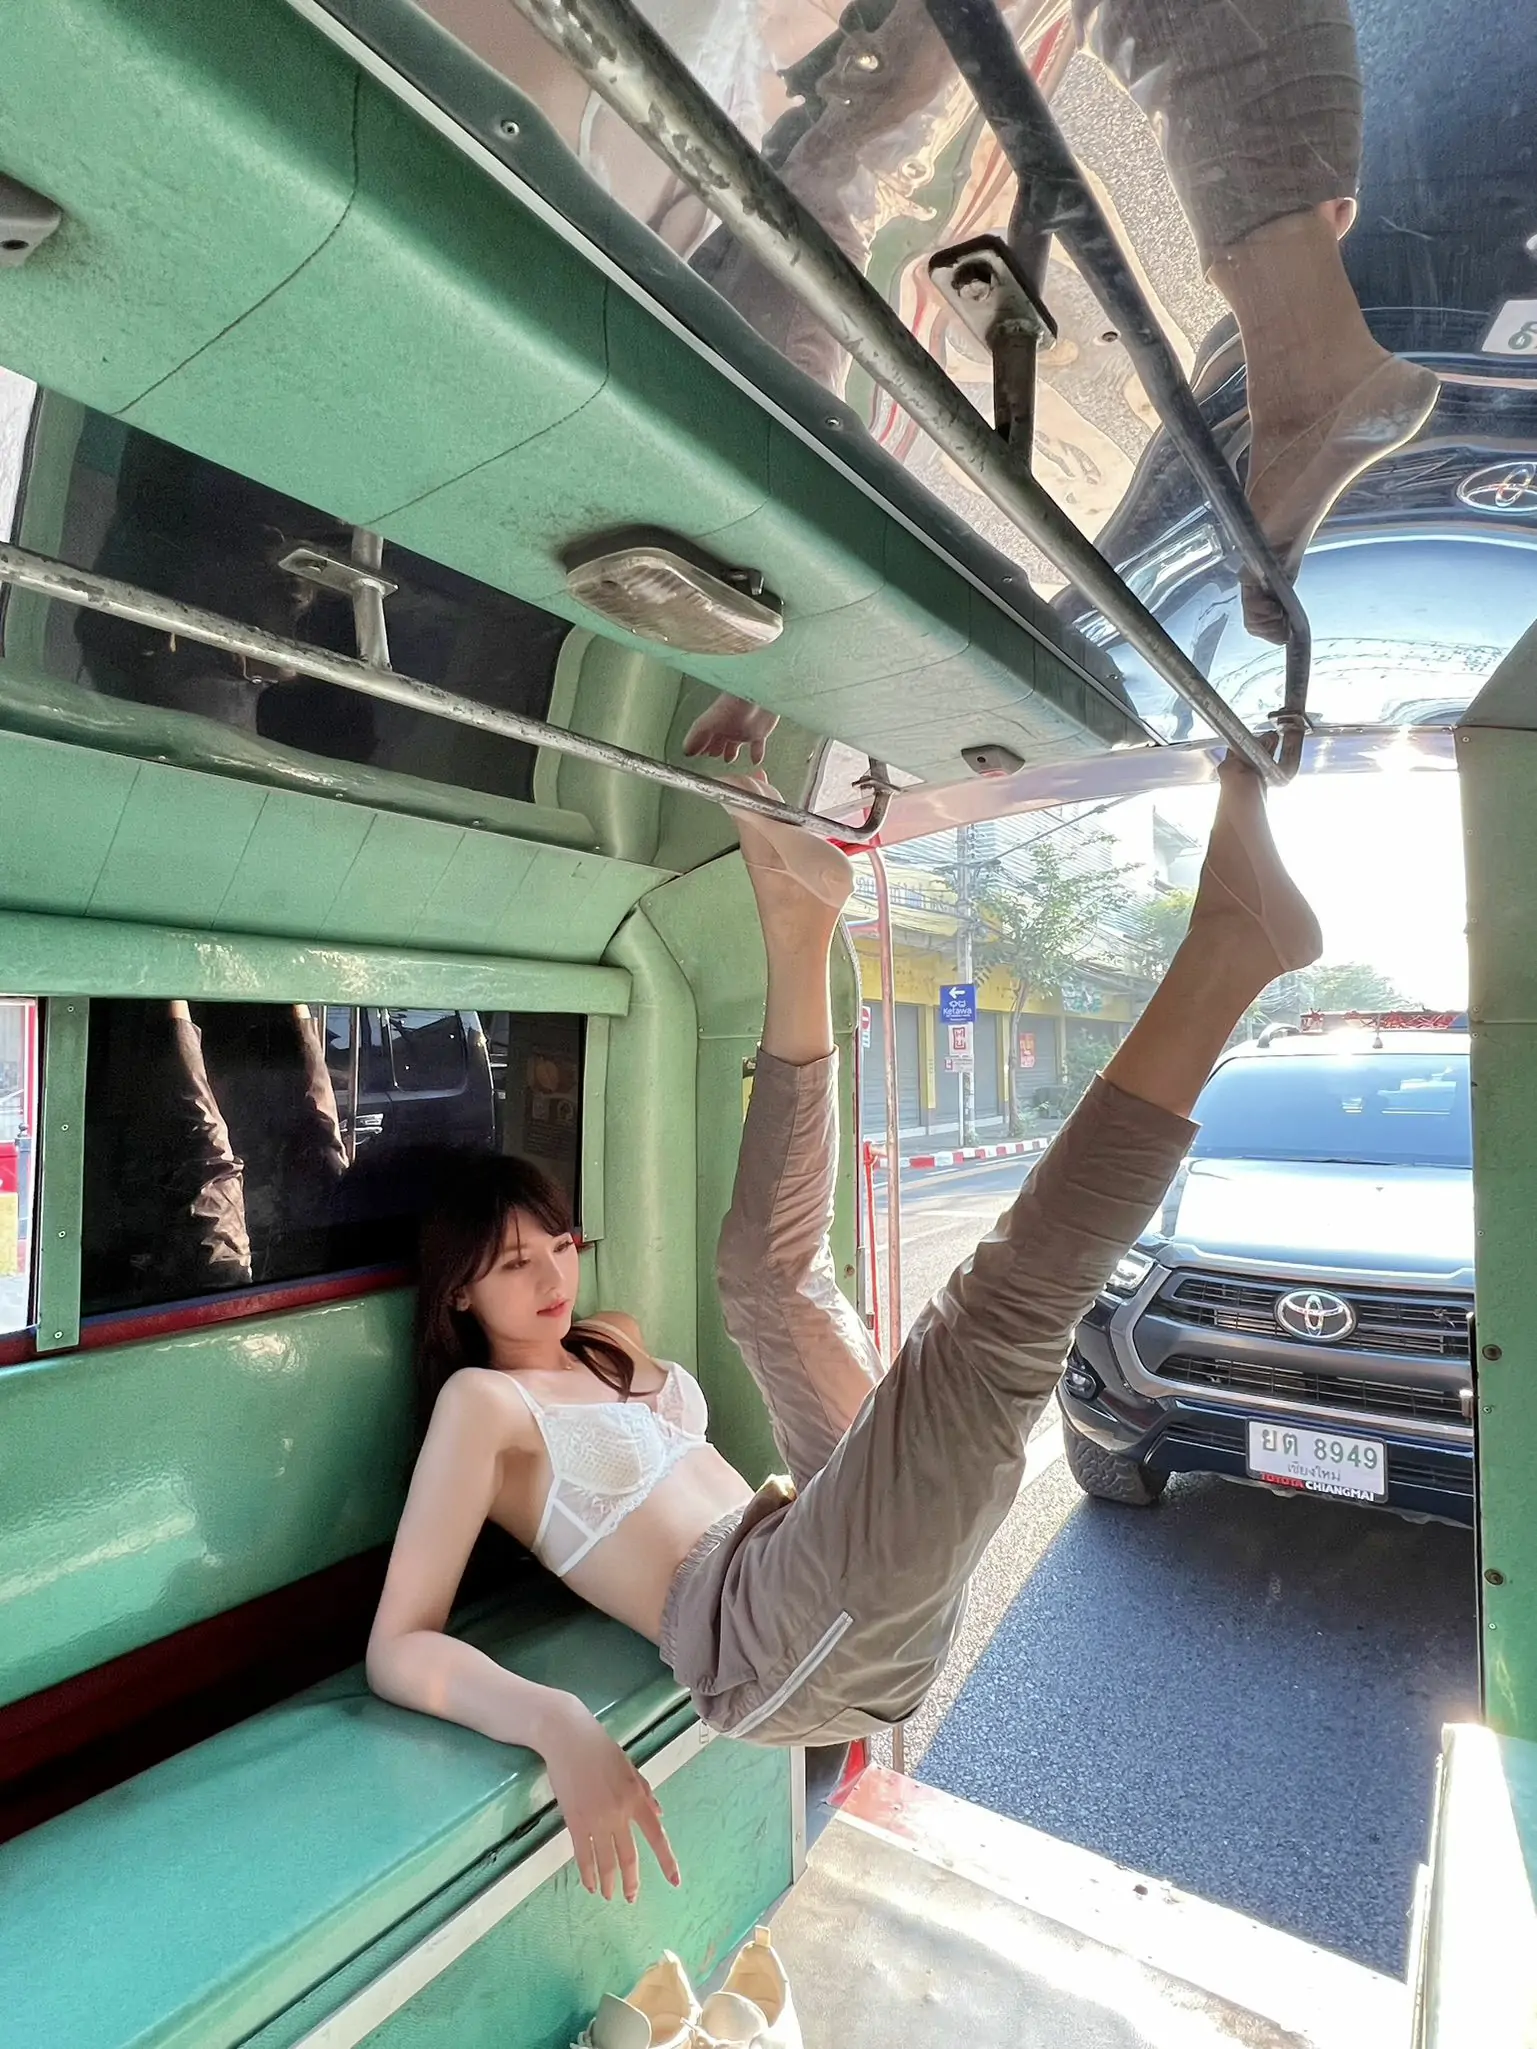 美女模特Azhua19970(阿朱啊) - tutu车